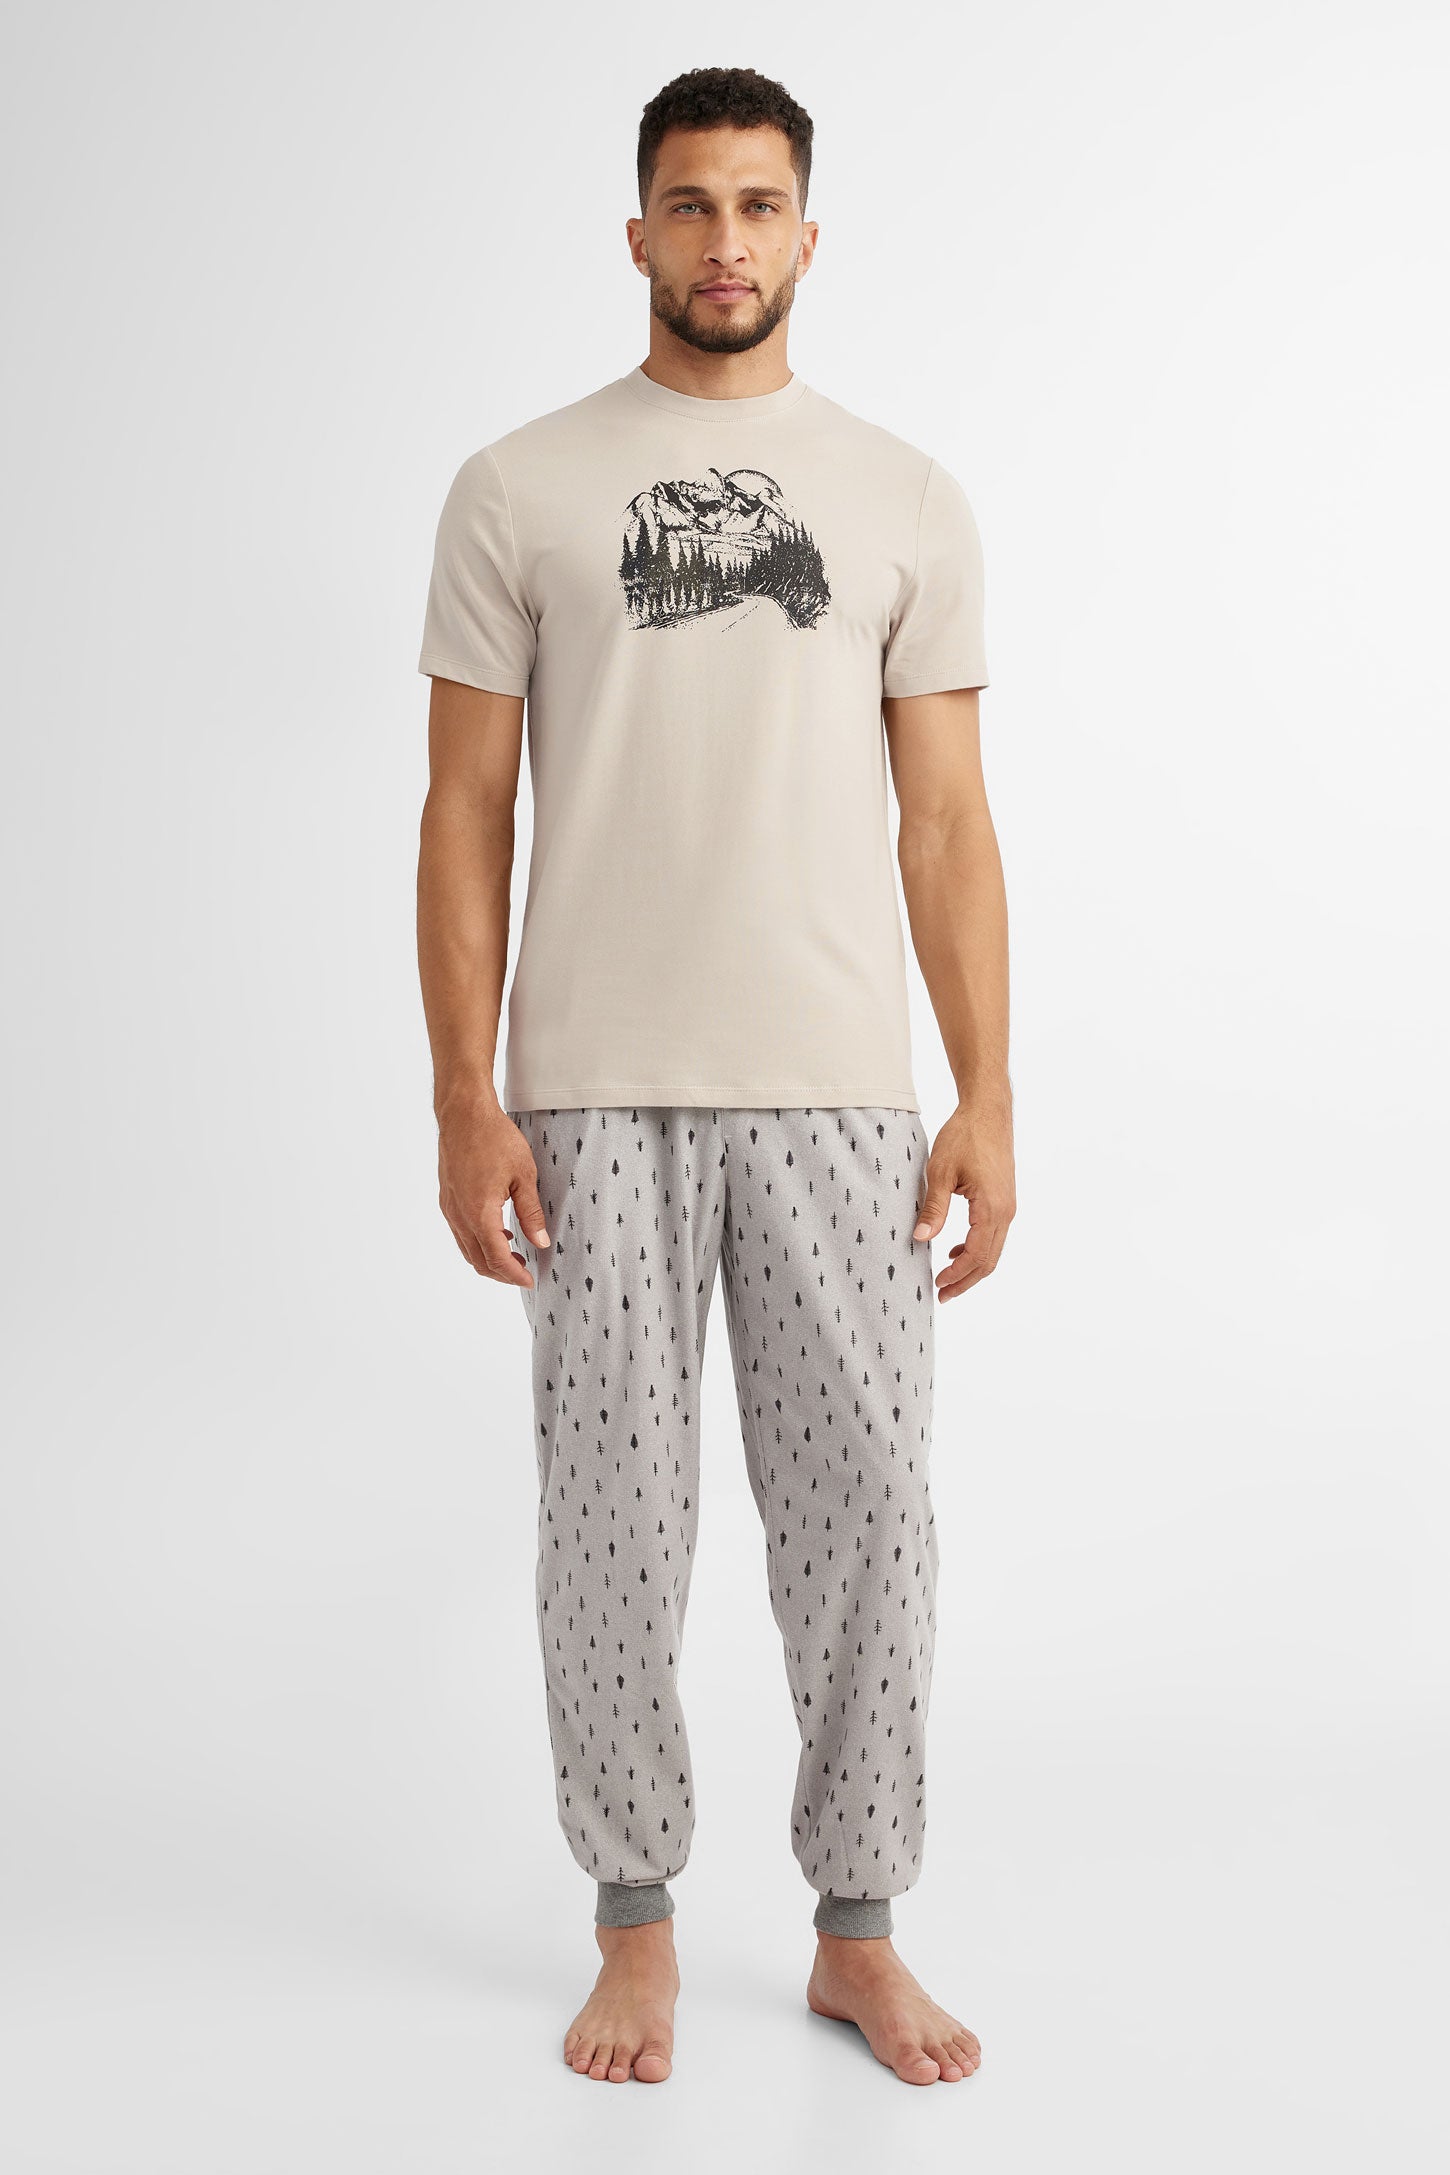 Duos futés, T-shirt pyjama imprimé, 2/40$ - Homme && CHAMEAU